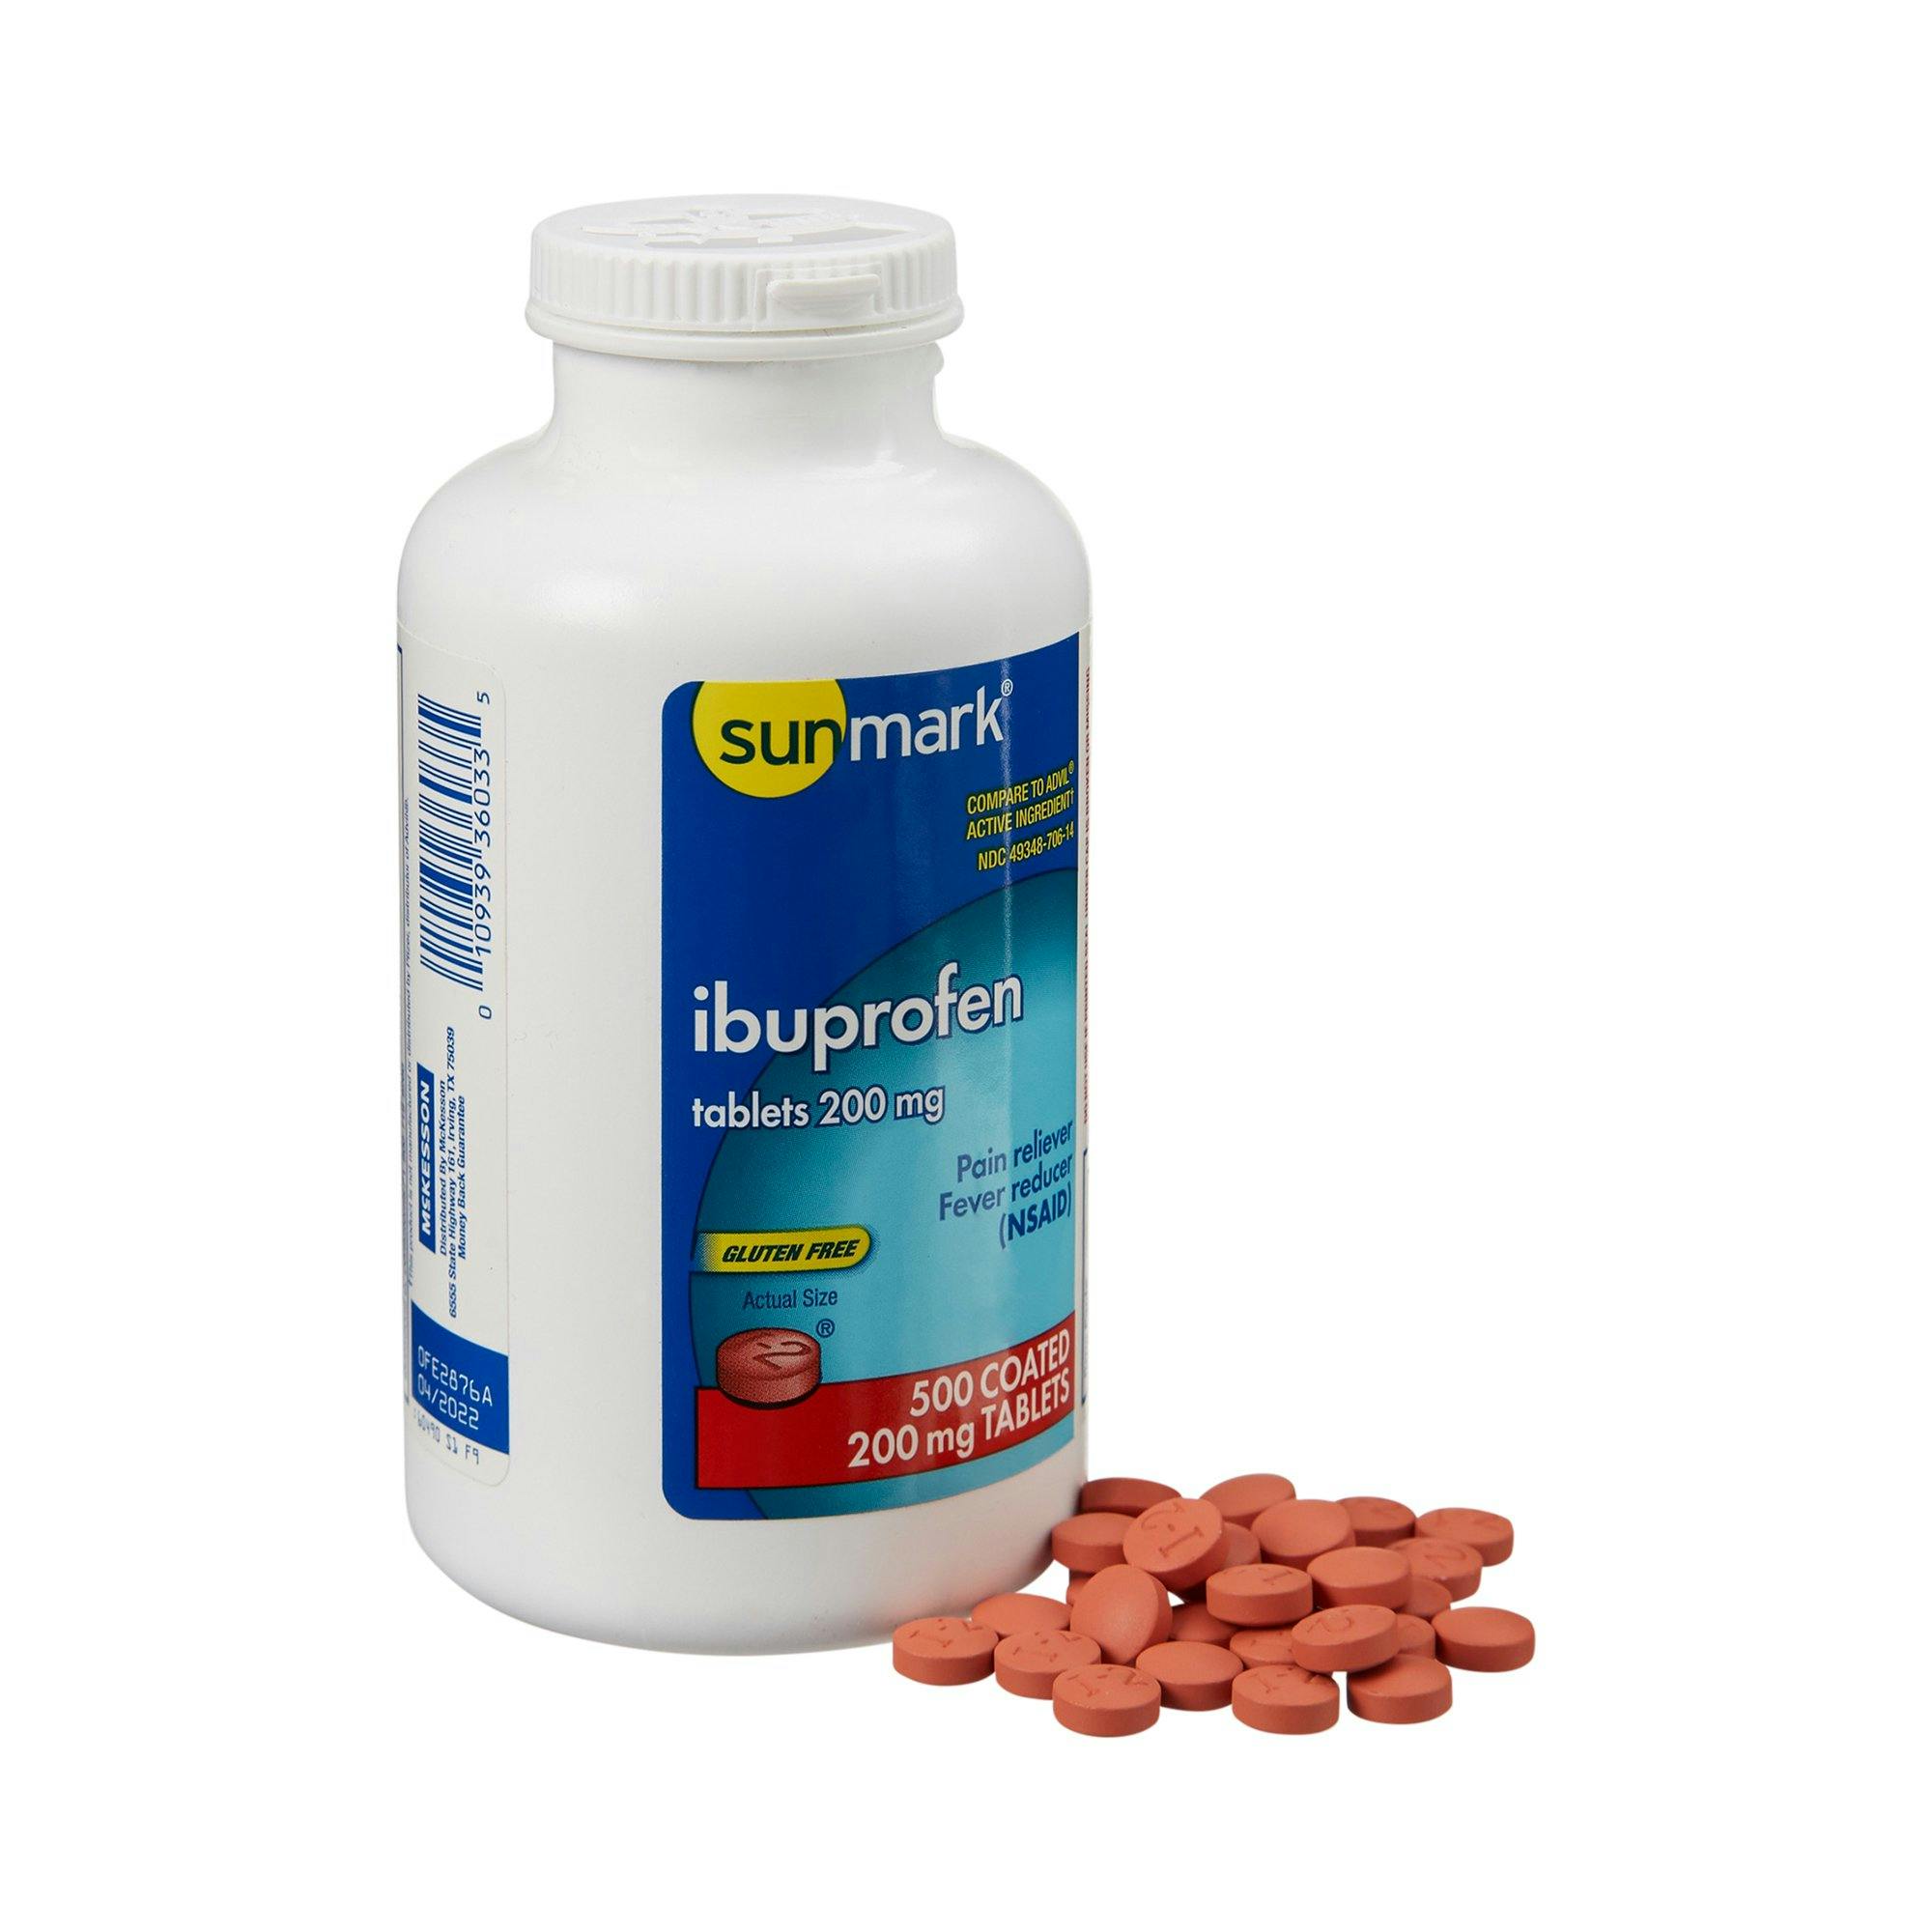 Sunmark Ibuprofen Pain Relief, 200 mg Strength, 500 per Bottle, 49348070614, 1 Bottle